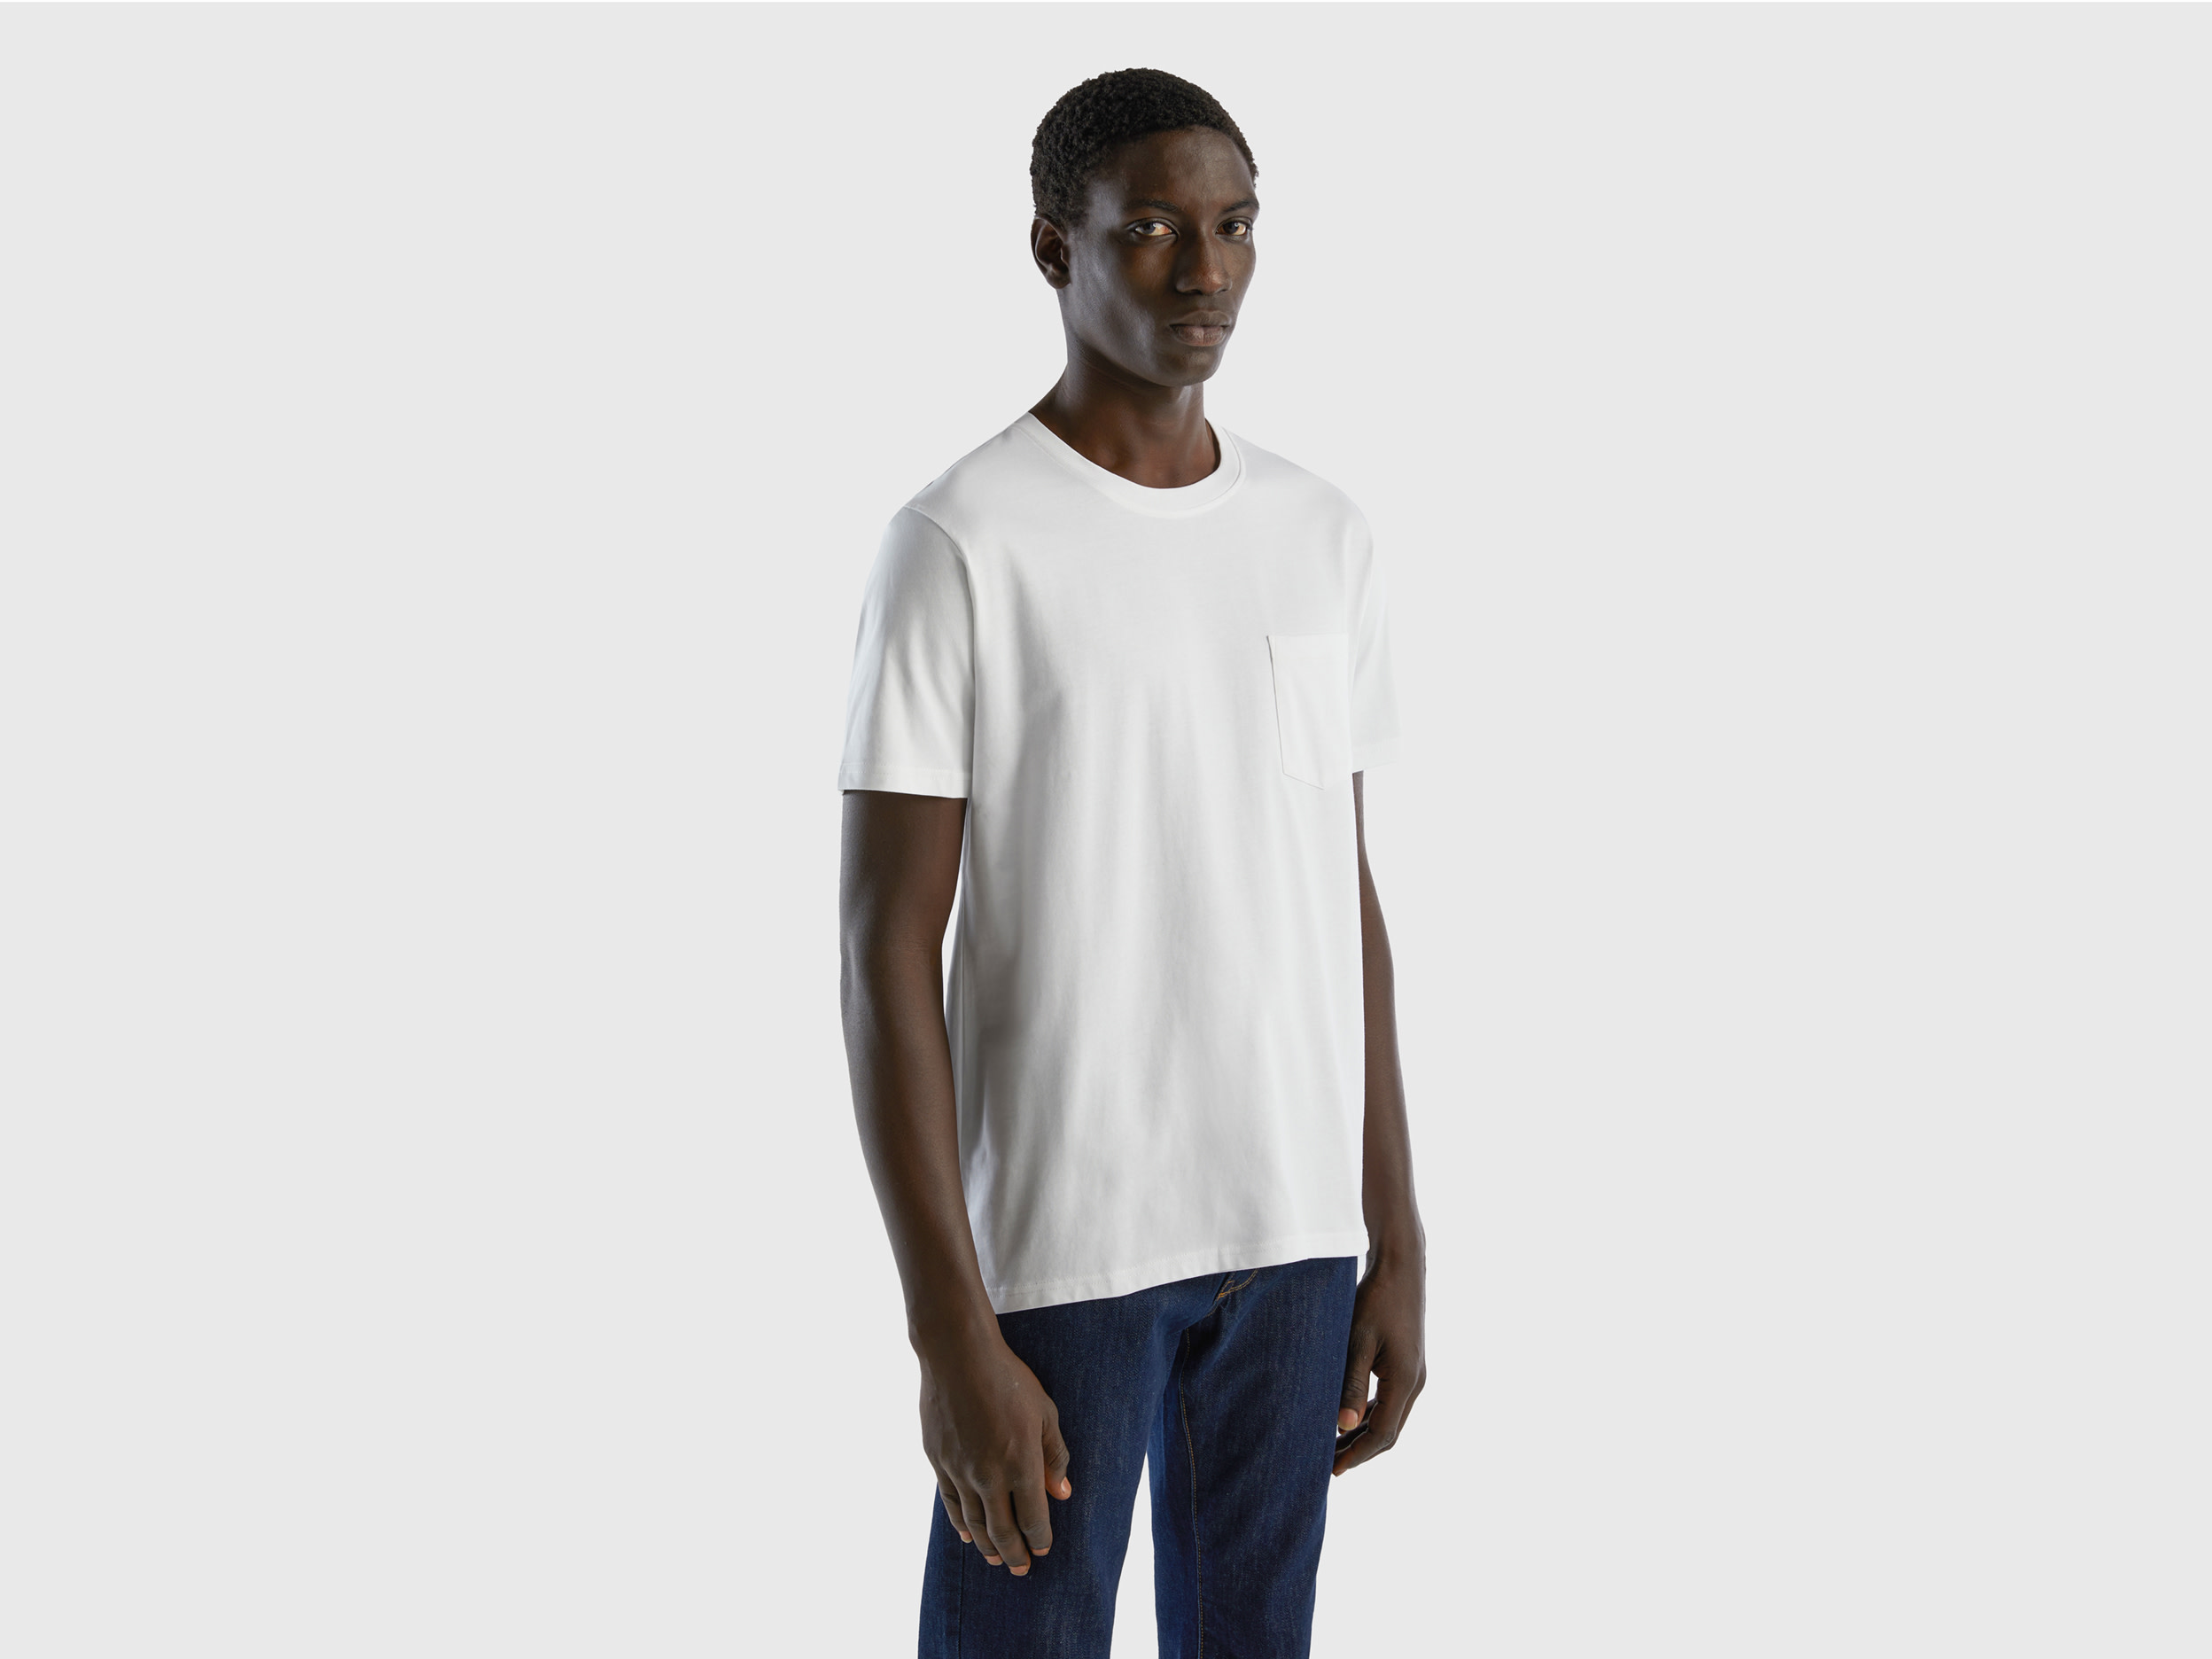 Benetton, 100% Cotton T-shirt With Pocket, size XS, White, Men